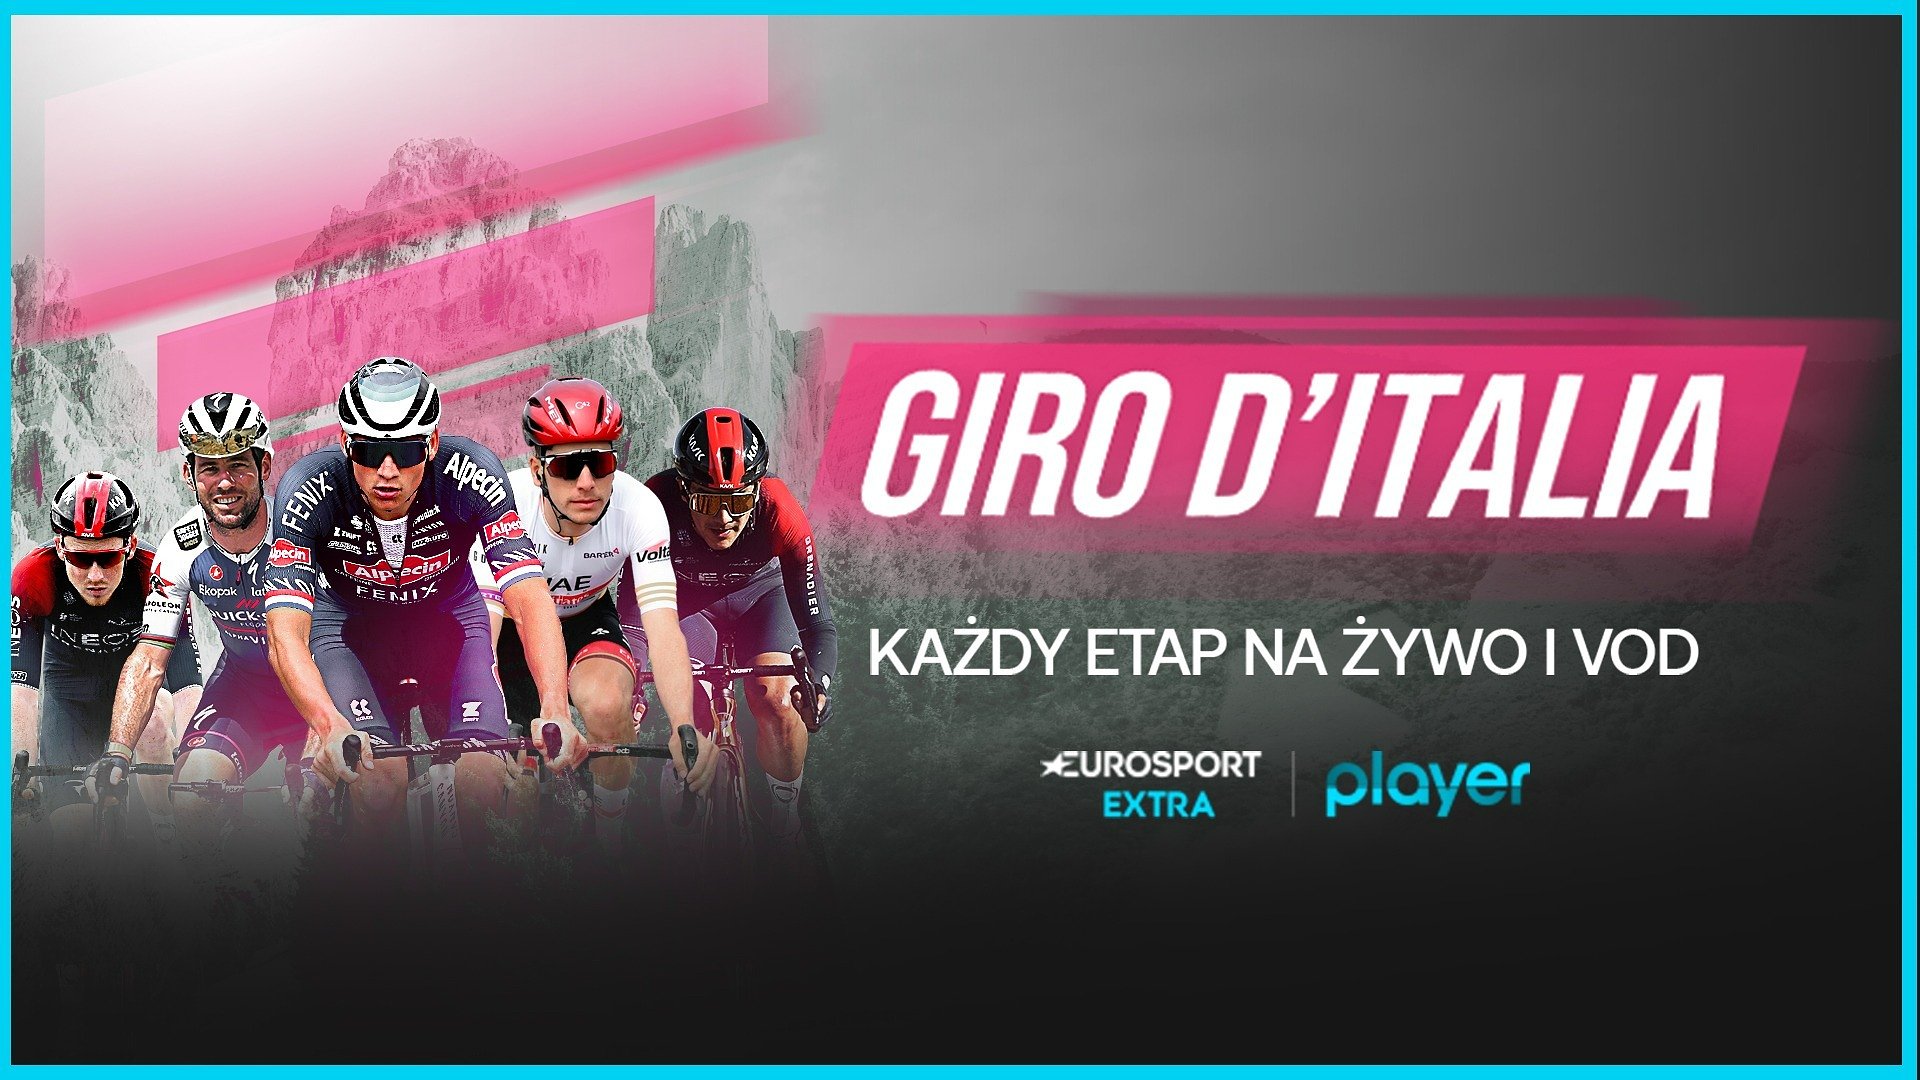 Gdzie oglądać Giro d’Italia? Player i Eurosport zapewniają transmisję każdego etapu – rywalizacja trwa!